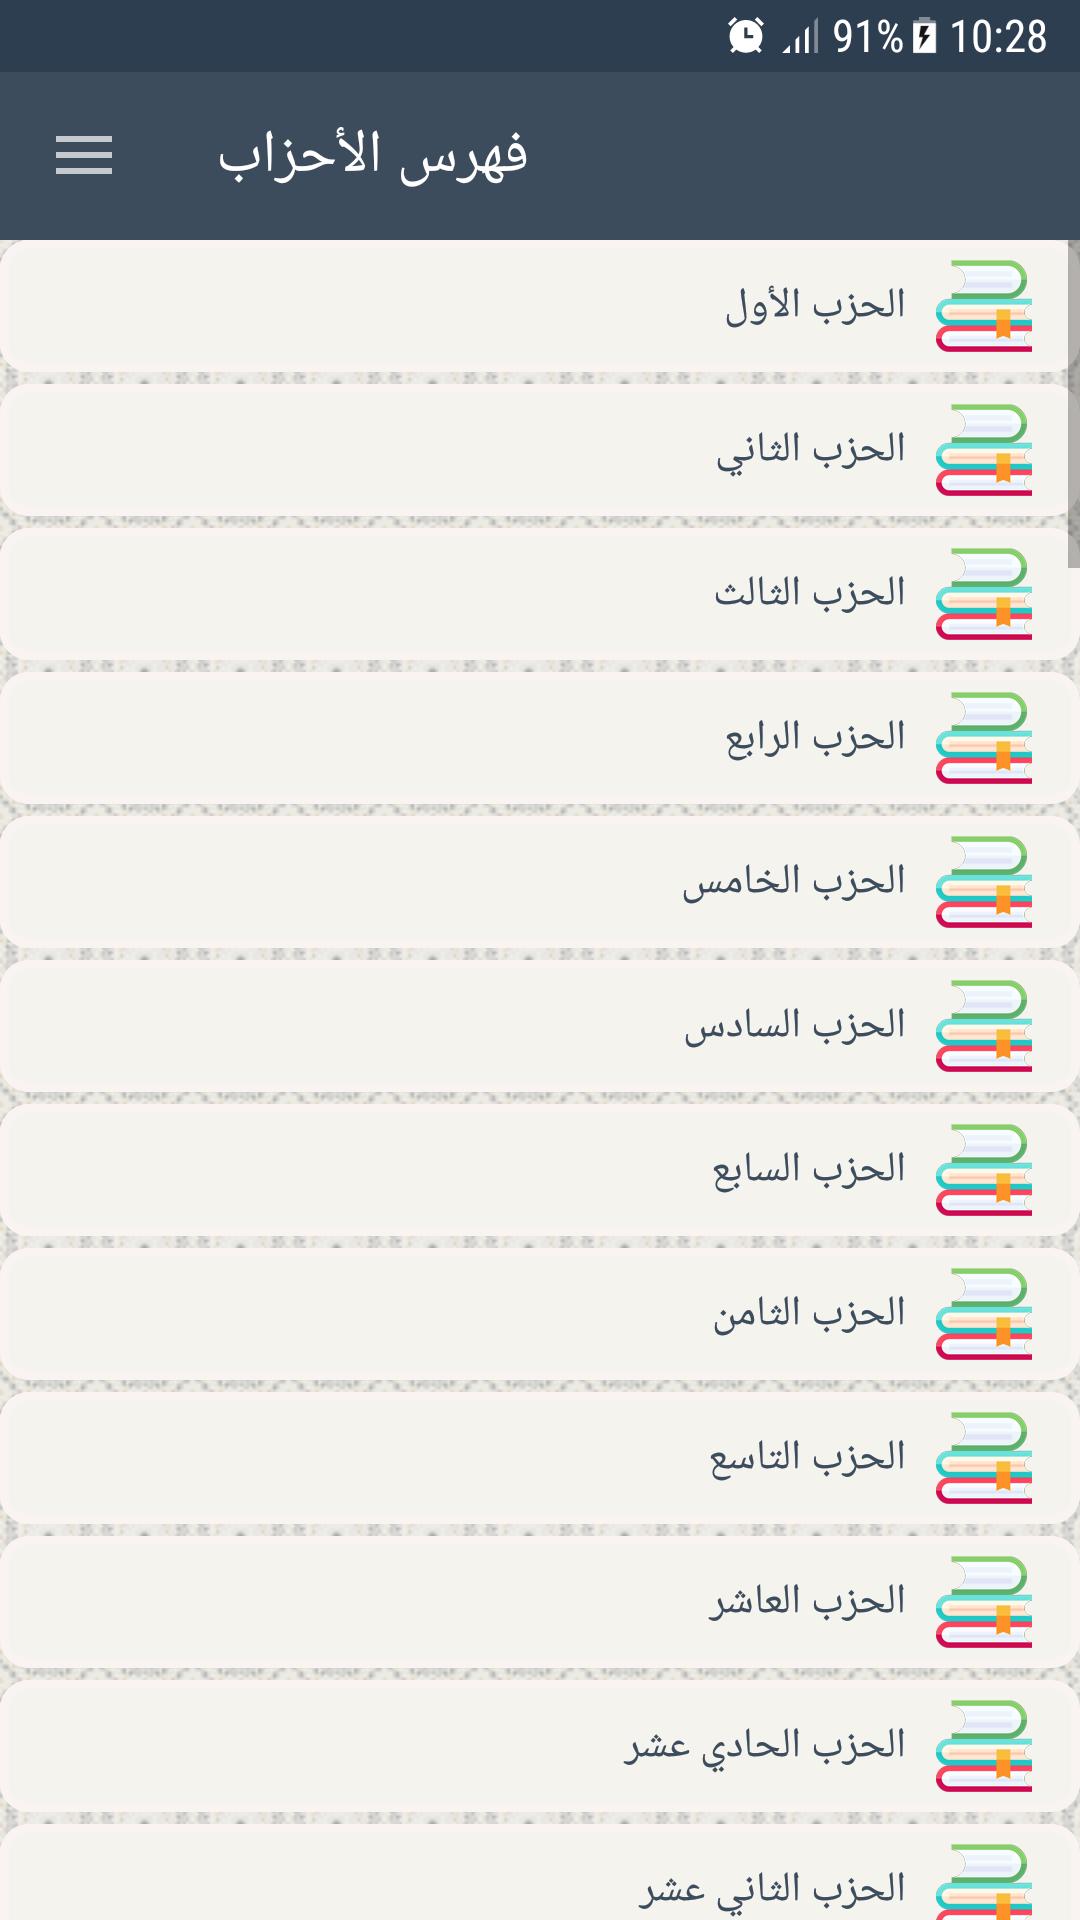 القرآن الكريم - ورش 1.0 Screenshot 4